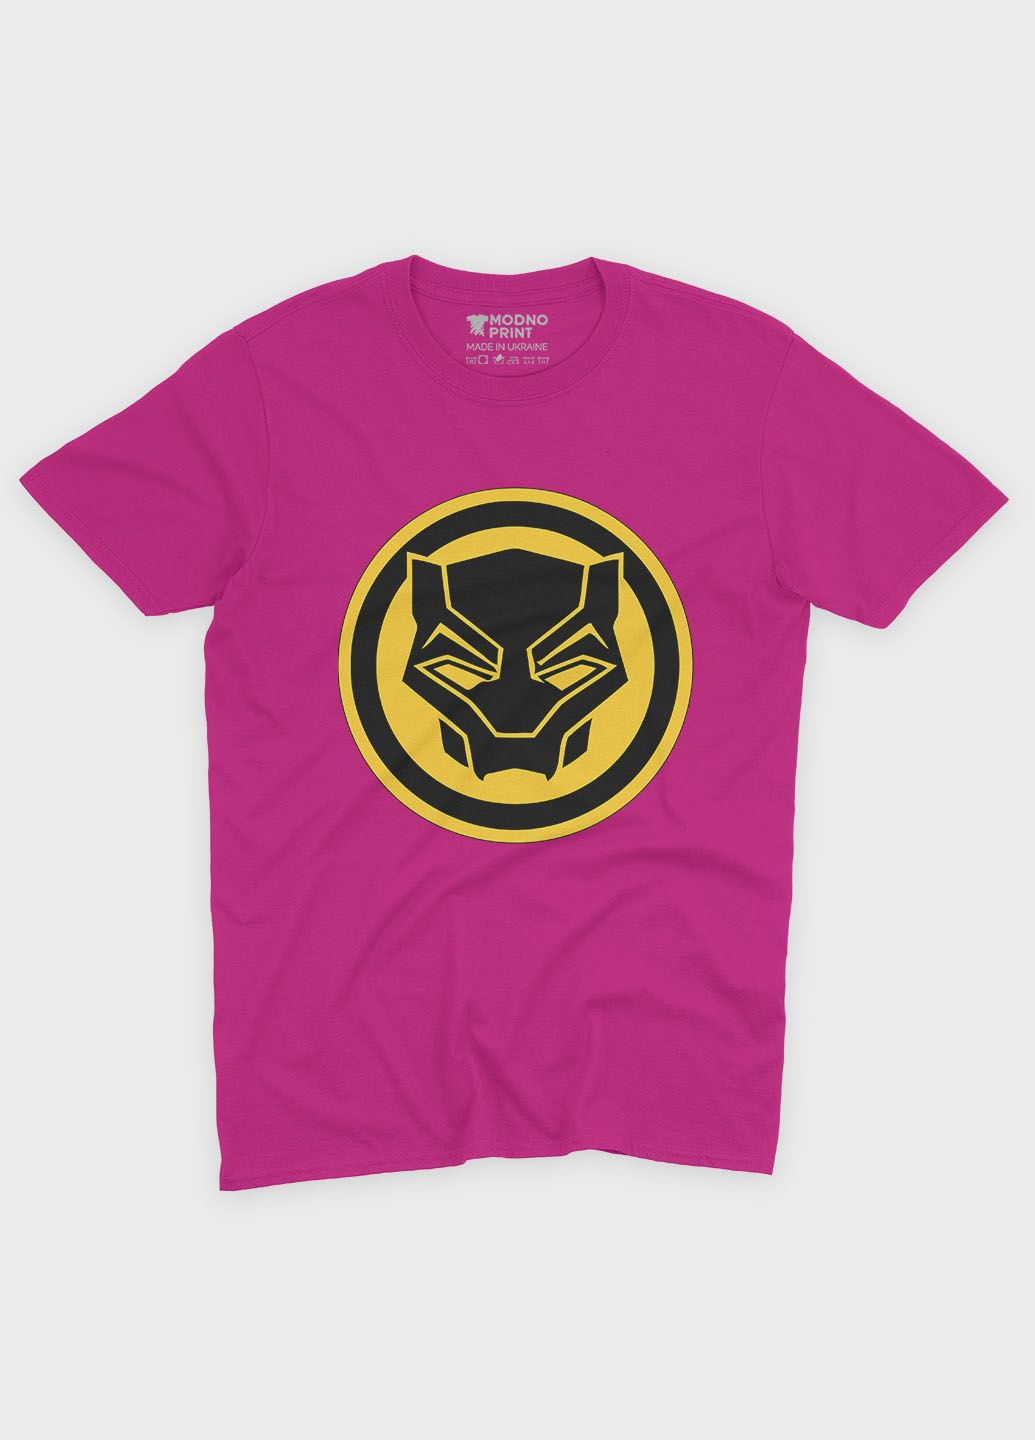 Рожева демісезонна футболка для хлопчика з принтом супергероя - чорна пантера (ts001-1-fuxj-006-027-004-b) Modno